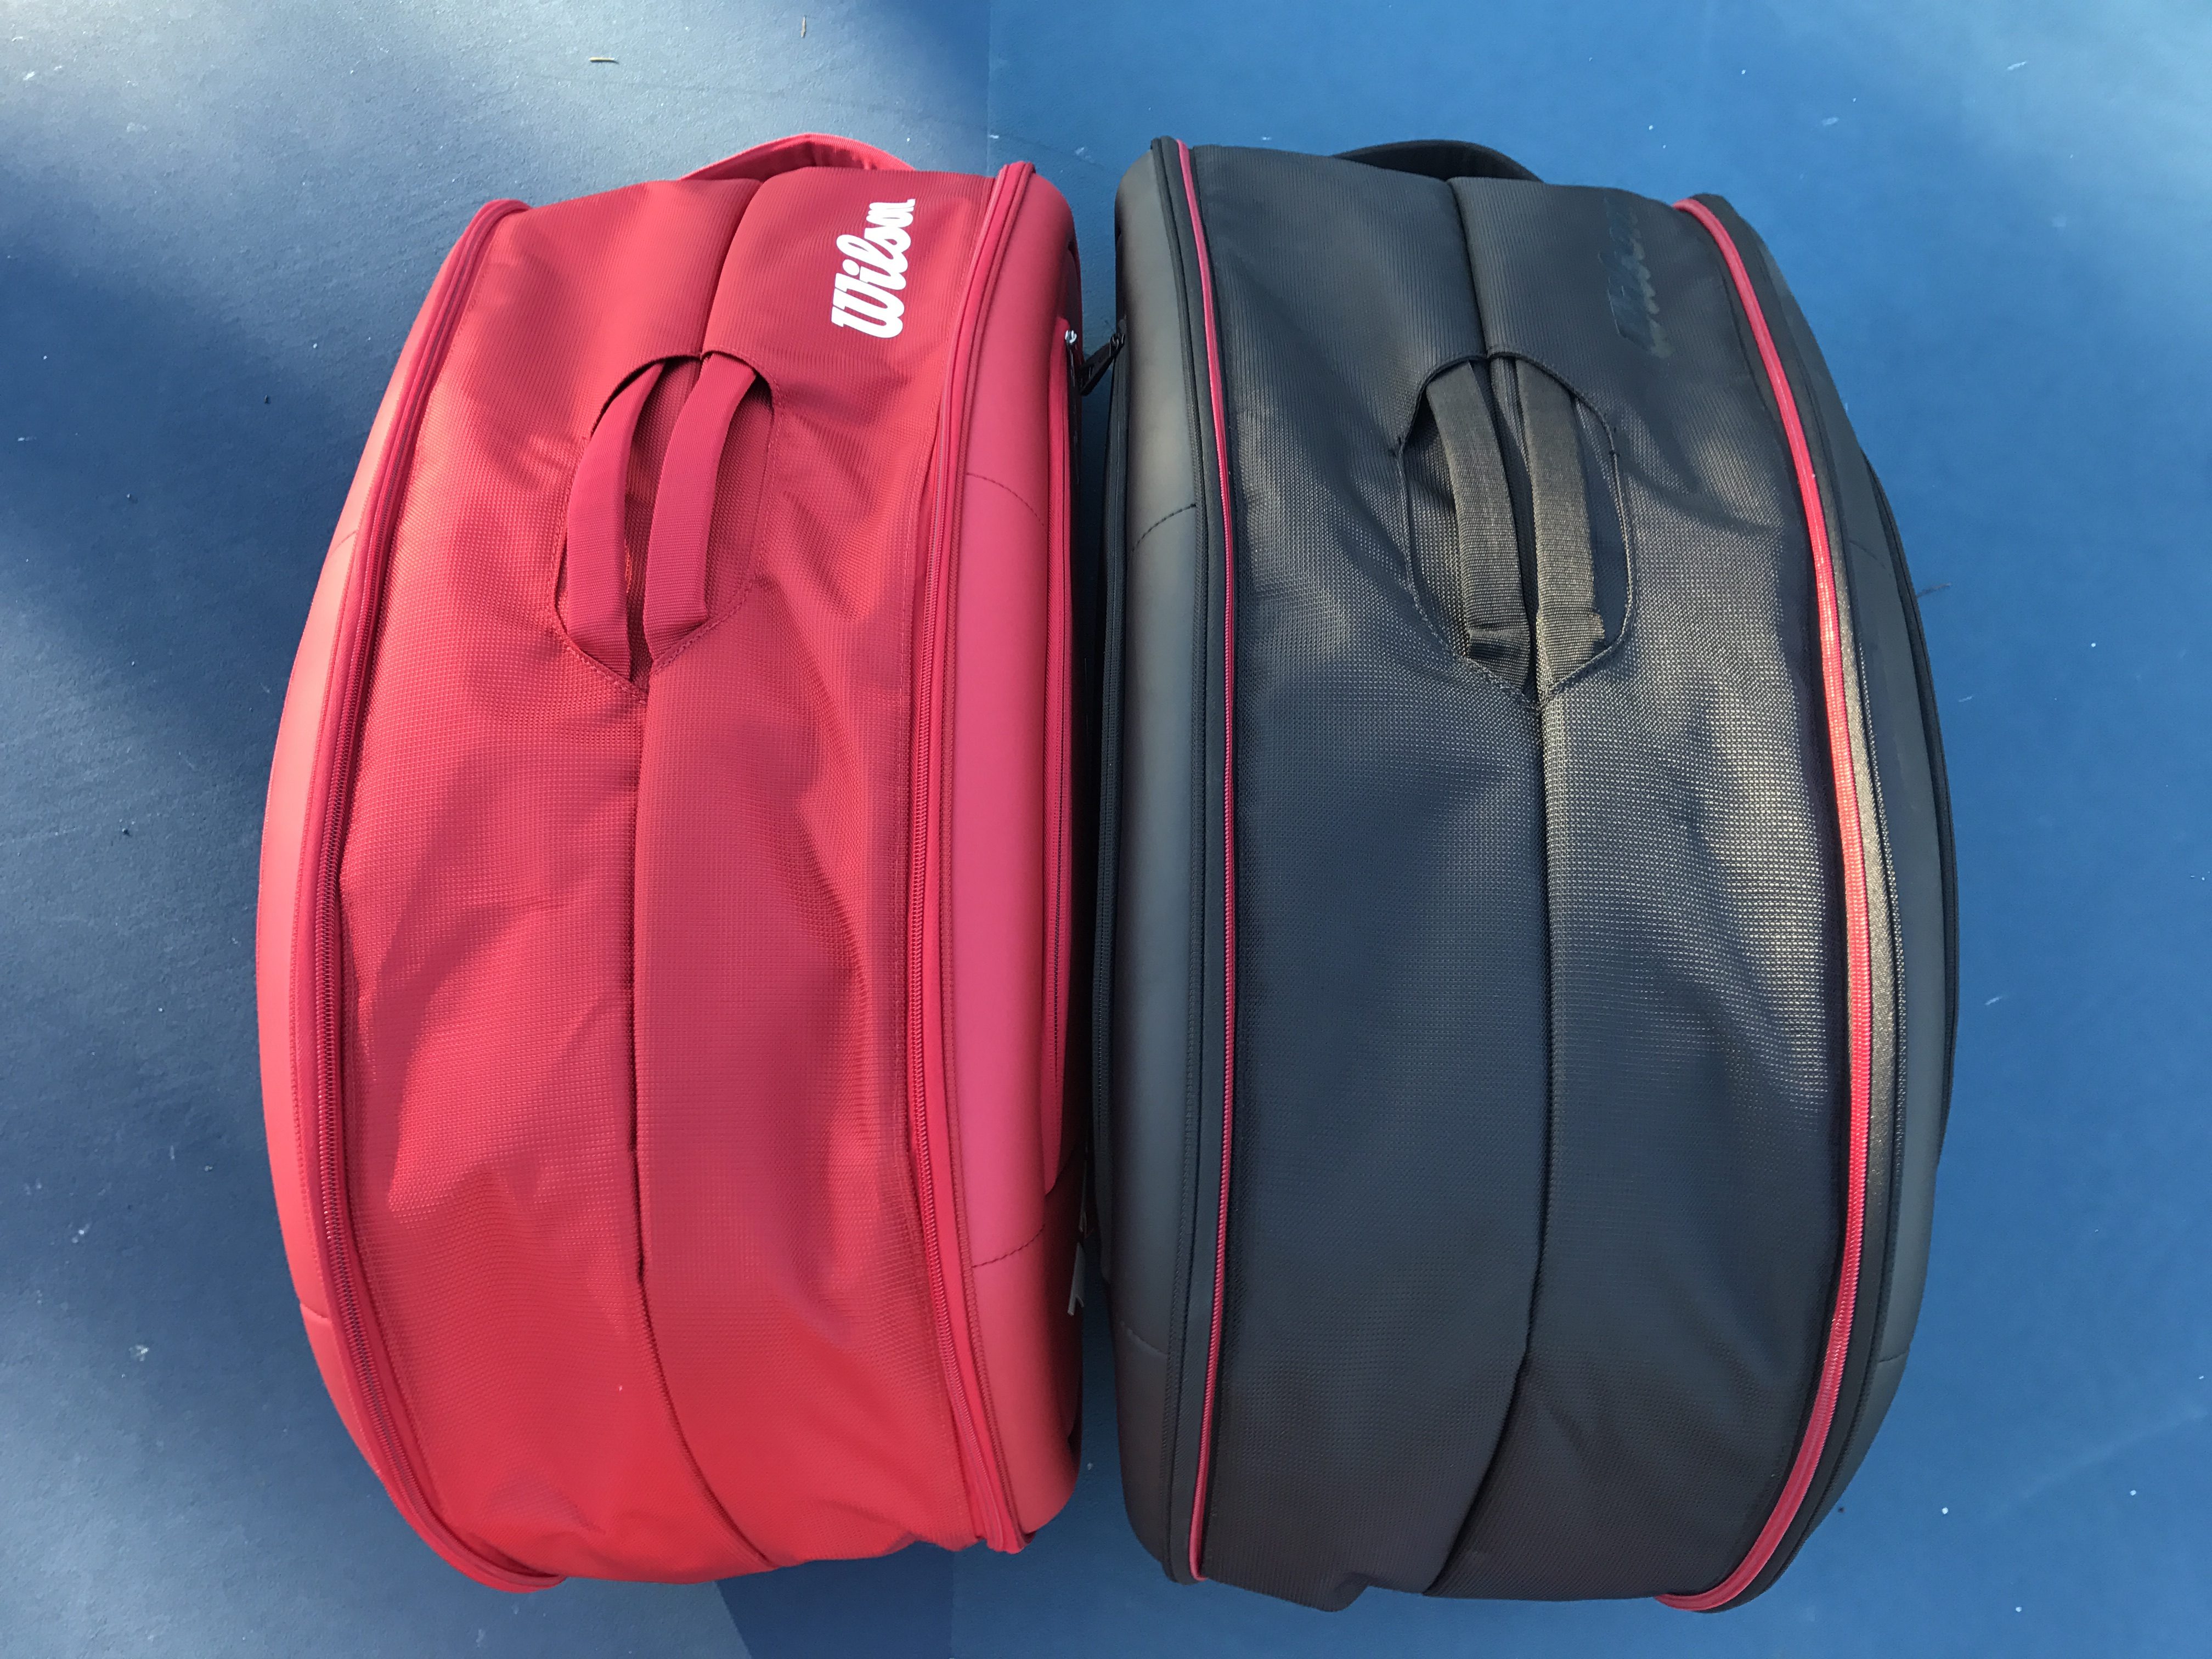 Federer DNA 12 Pack Tennis Bag - Red and Black